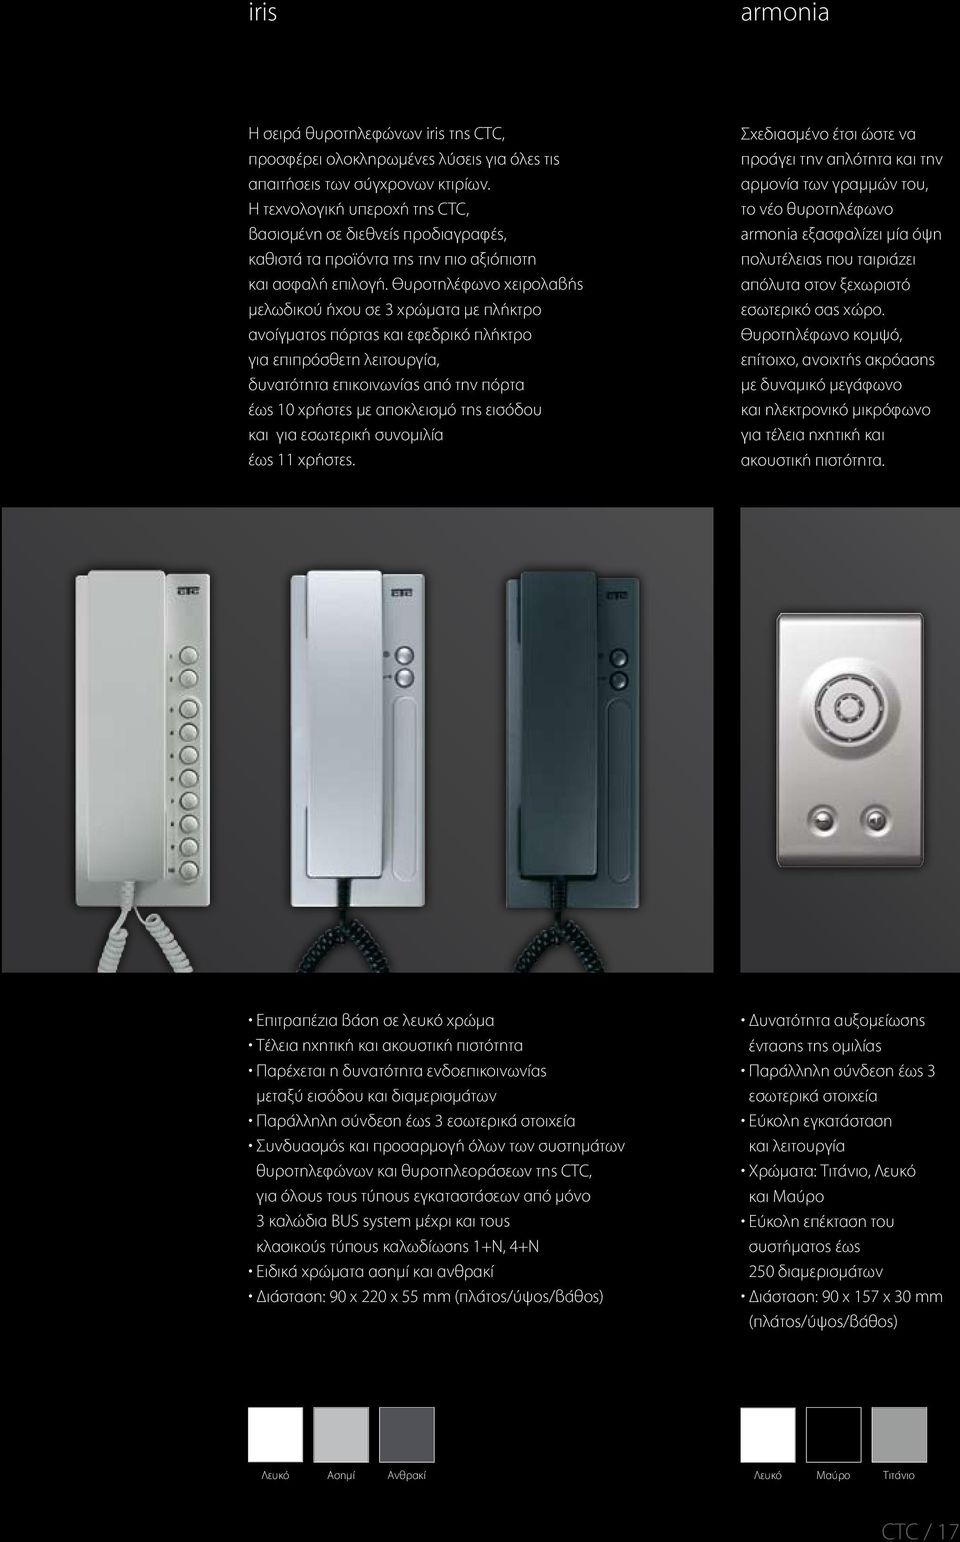 Θυροτηλέφωνο χειρολαβής μελωδικού ήχου σε 3 χρώματα με πλήκτρο ανοίγματος πόρτας και εφεδρικό πλήκτρο για επιπρόσθετη λειτουργία, δυνατότητα επικοινωνίας από την πόρτα έως 10 χρήστες με αποκλεισμό